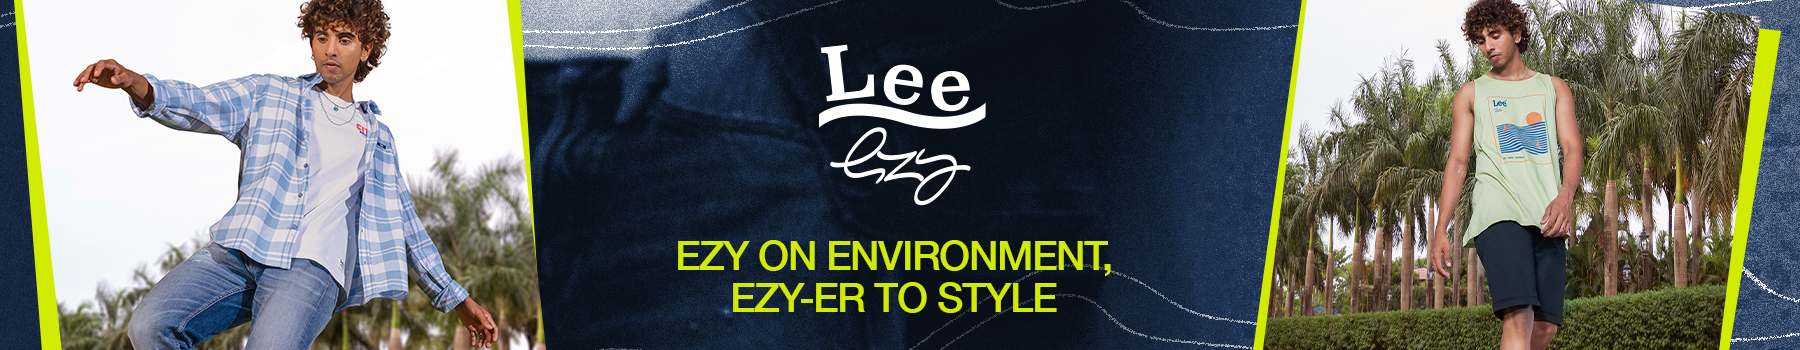 Lee Ezy